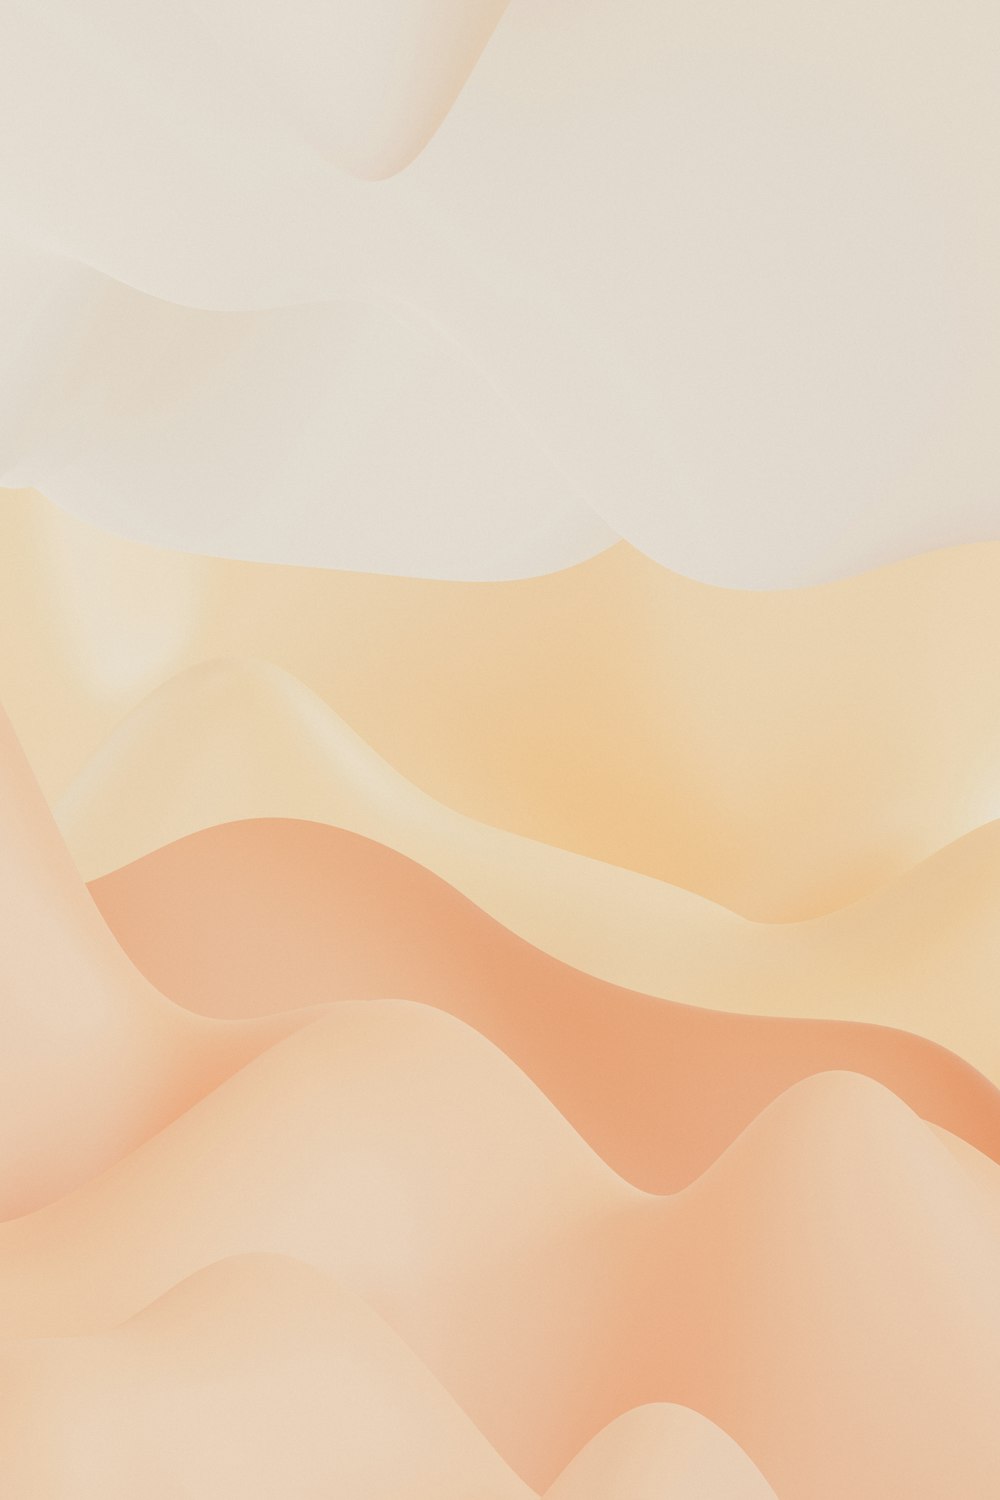 uma cena do deserto com um fundo branco e laranja